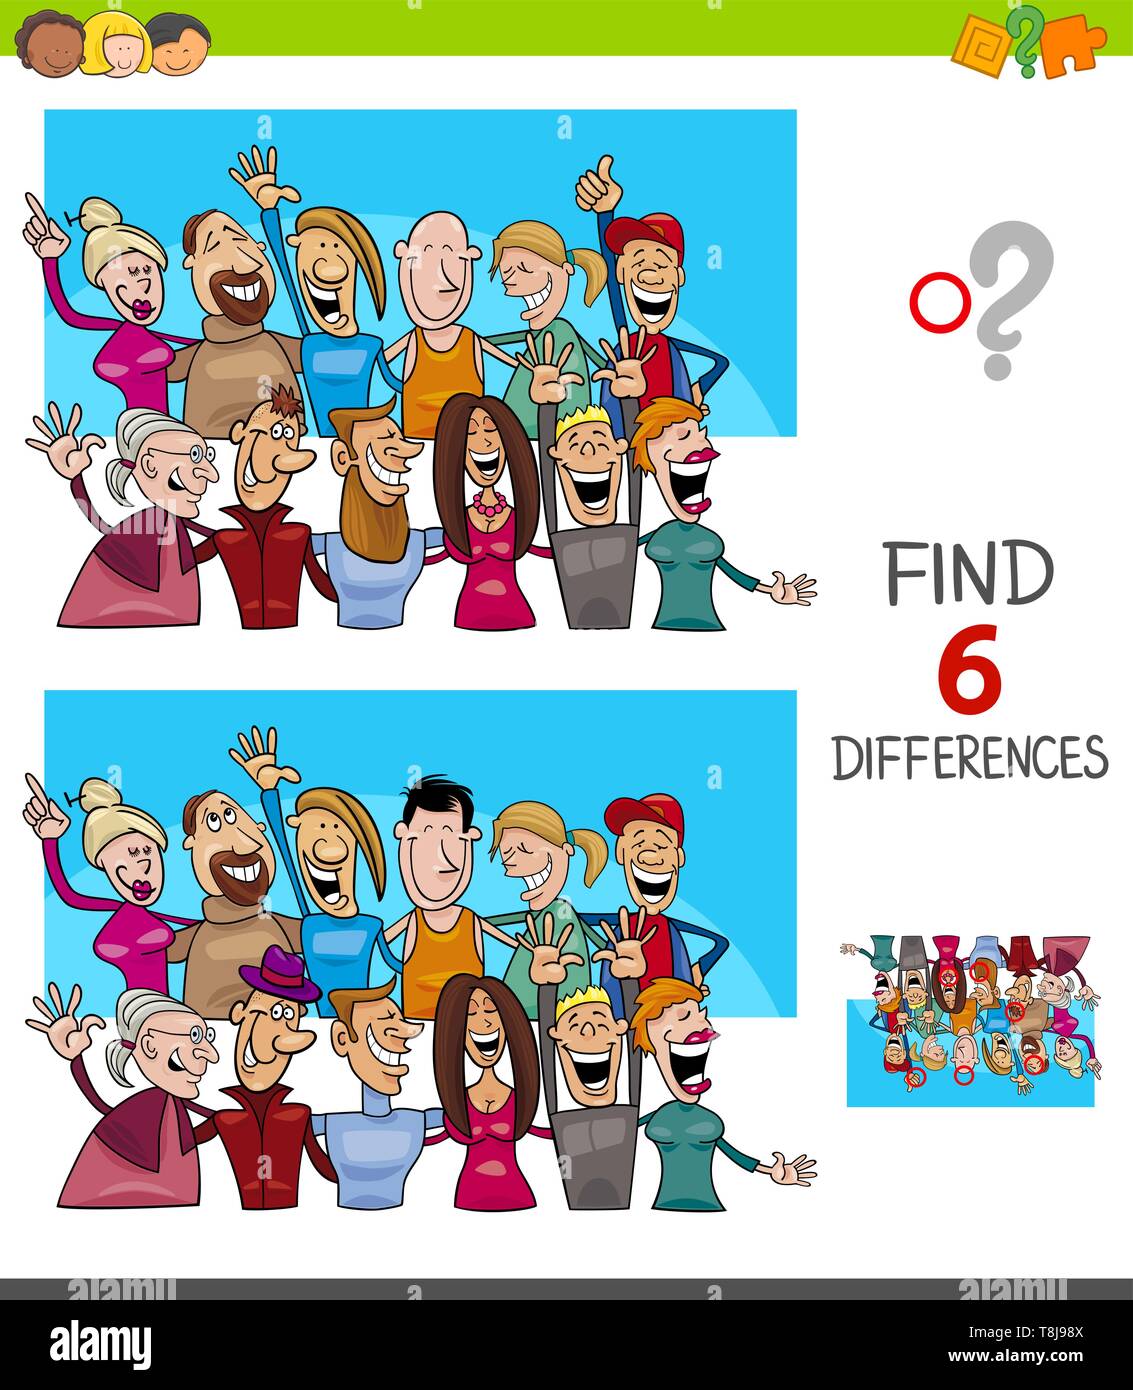 Illustrazione del fumetto di trovare 6 differenze tra le immagini del gioco educativo per bambini con le persone del gruppo di caratteri Illustrazione Vettoriale